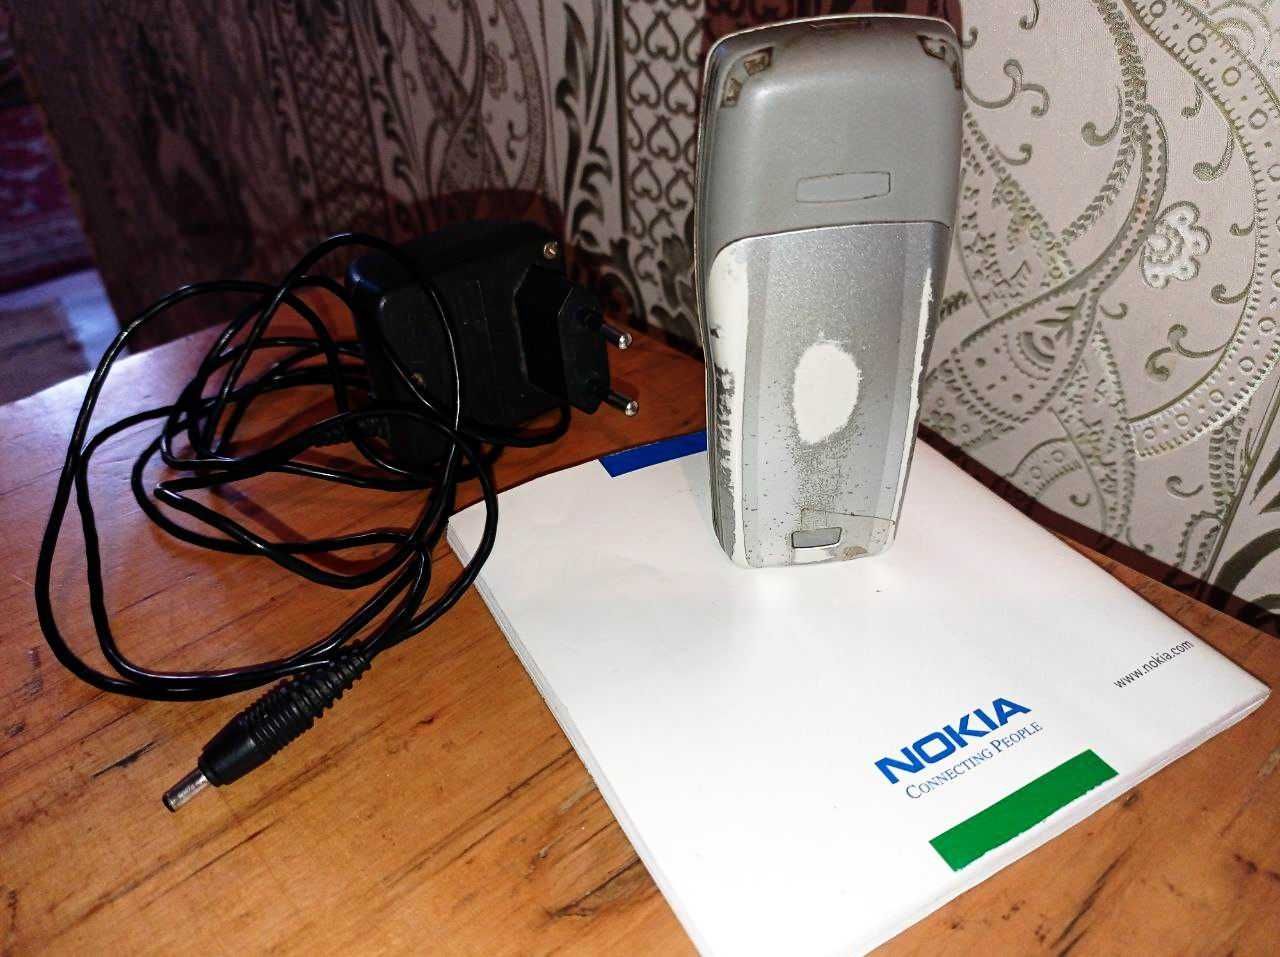 Телефон NOKIA 1101 + родной акум + зарядка + карта Djuice + инструкция